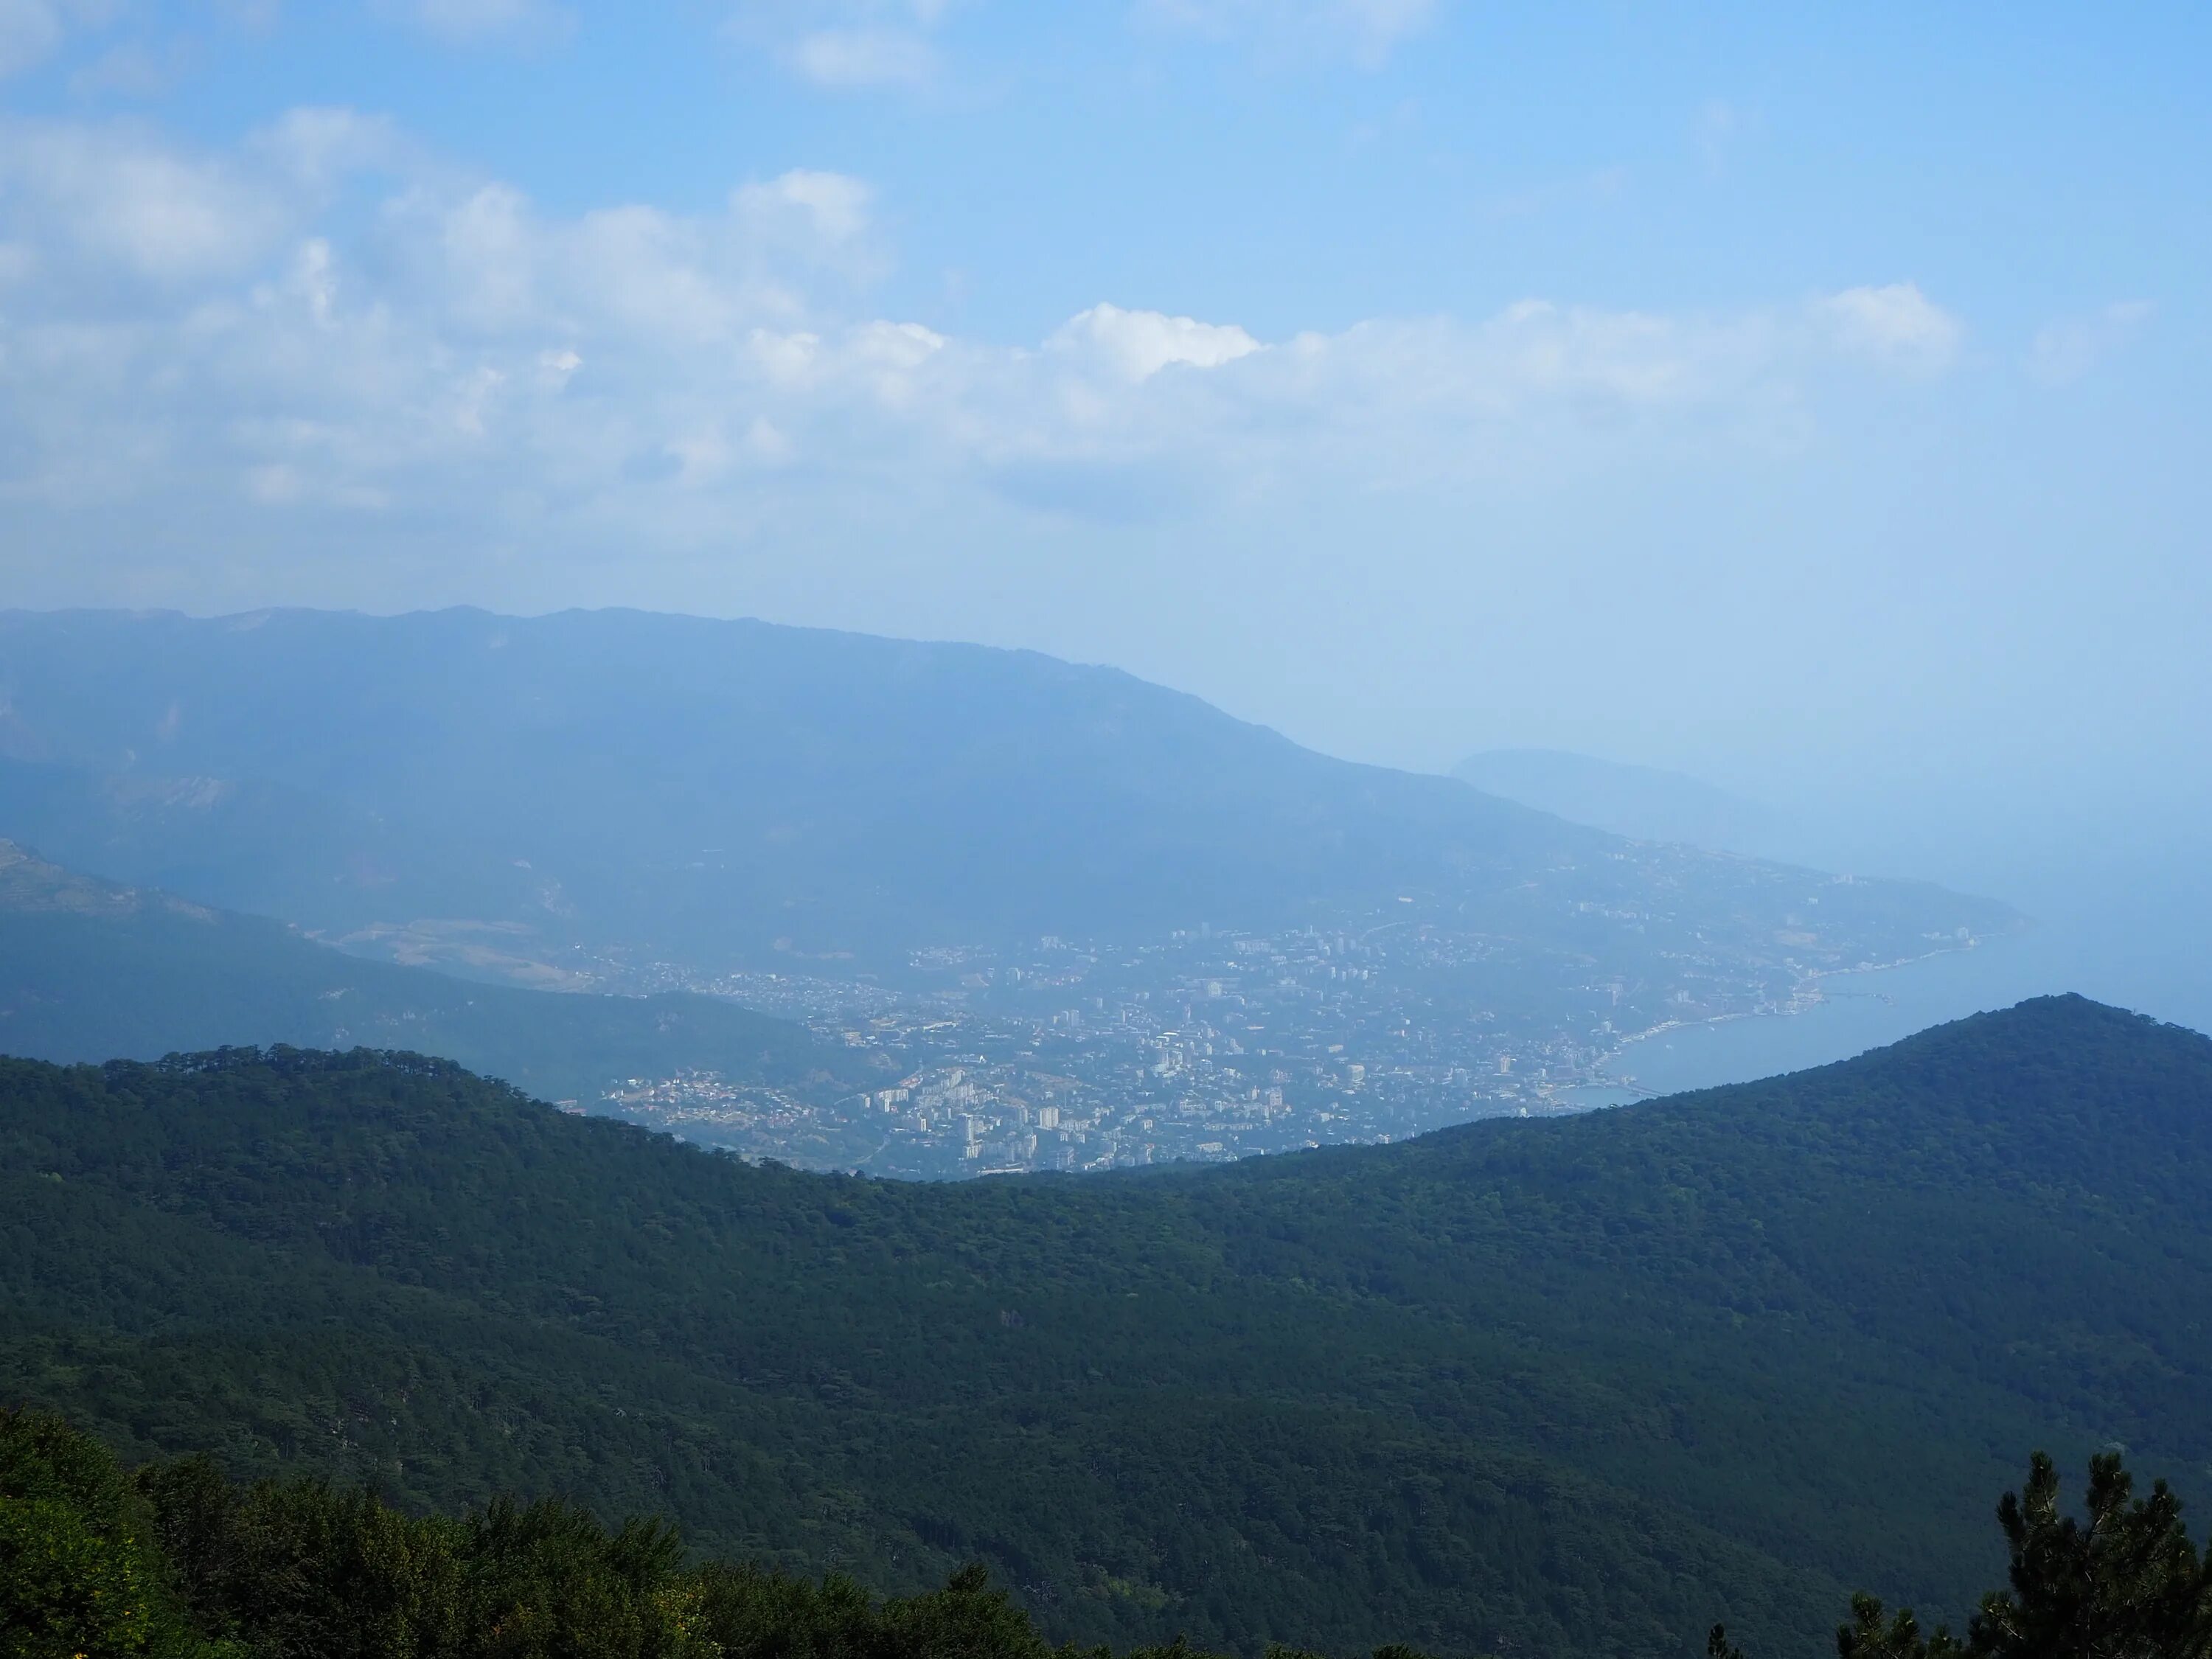 В дали видны горы. Вид на Аю Даг с ай Петри. Крымские горы вдали. Базы отдыха в горах Крыма.